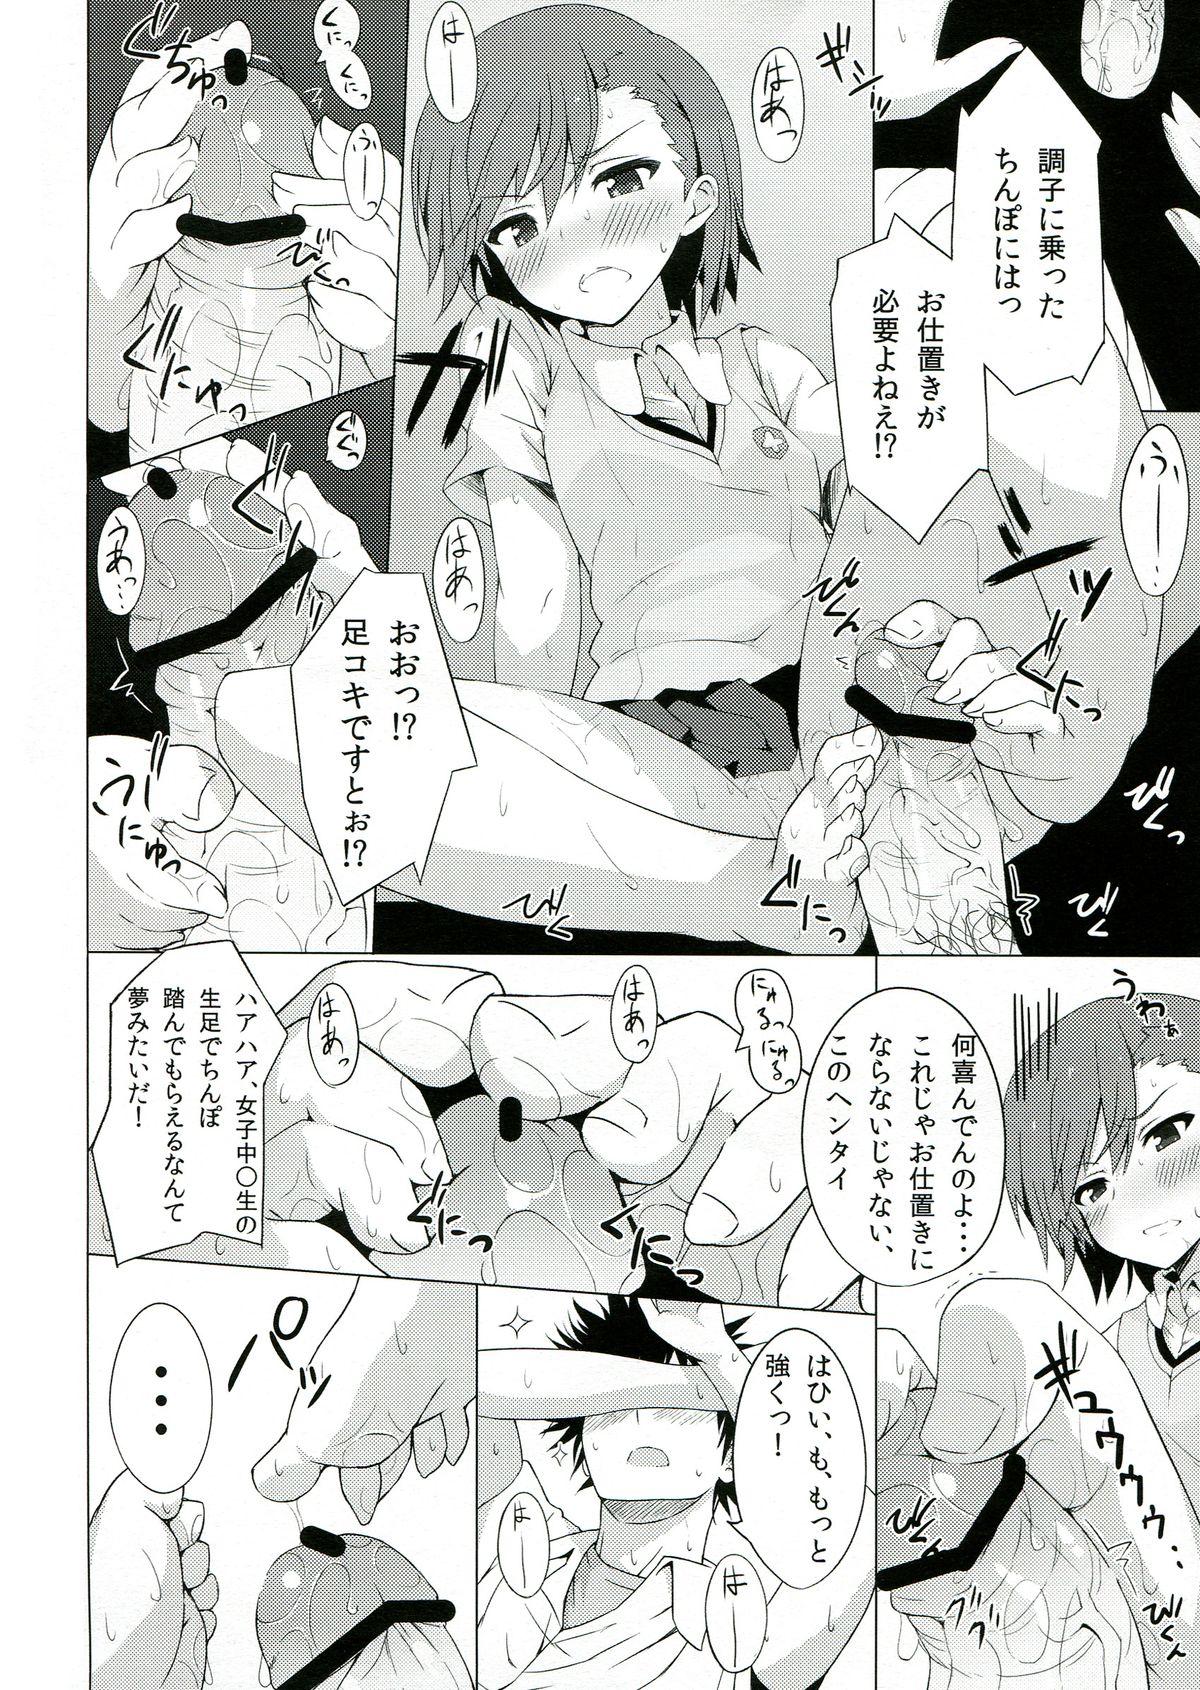 Doggystyle BiriBiri Shock! - Toaru kagaku no railgun Underwear - Page 12